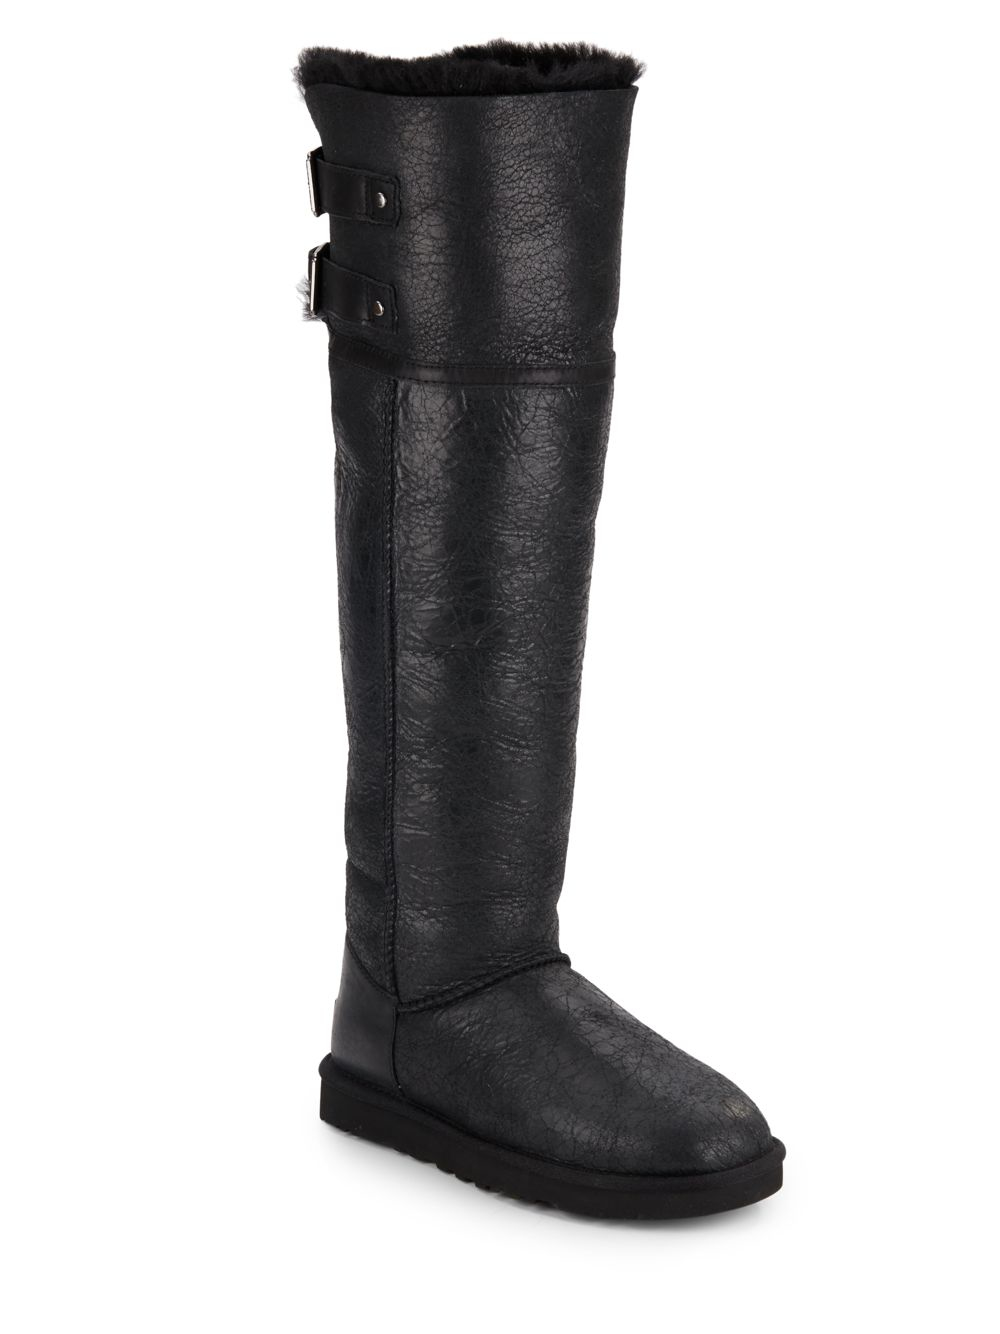 Ειδικός Ανoi να συνεχίσει ugg 2016 collection winter black boot ...